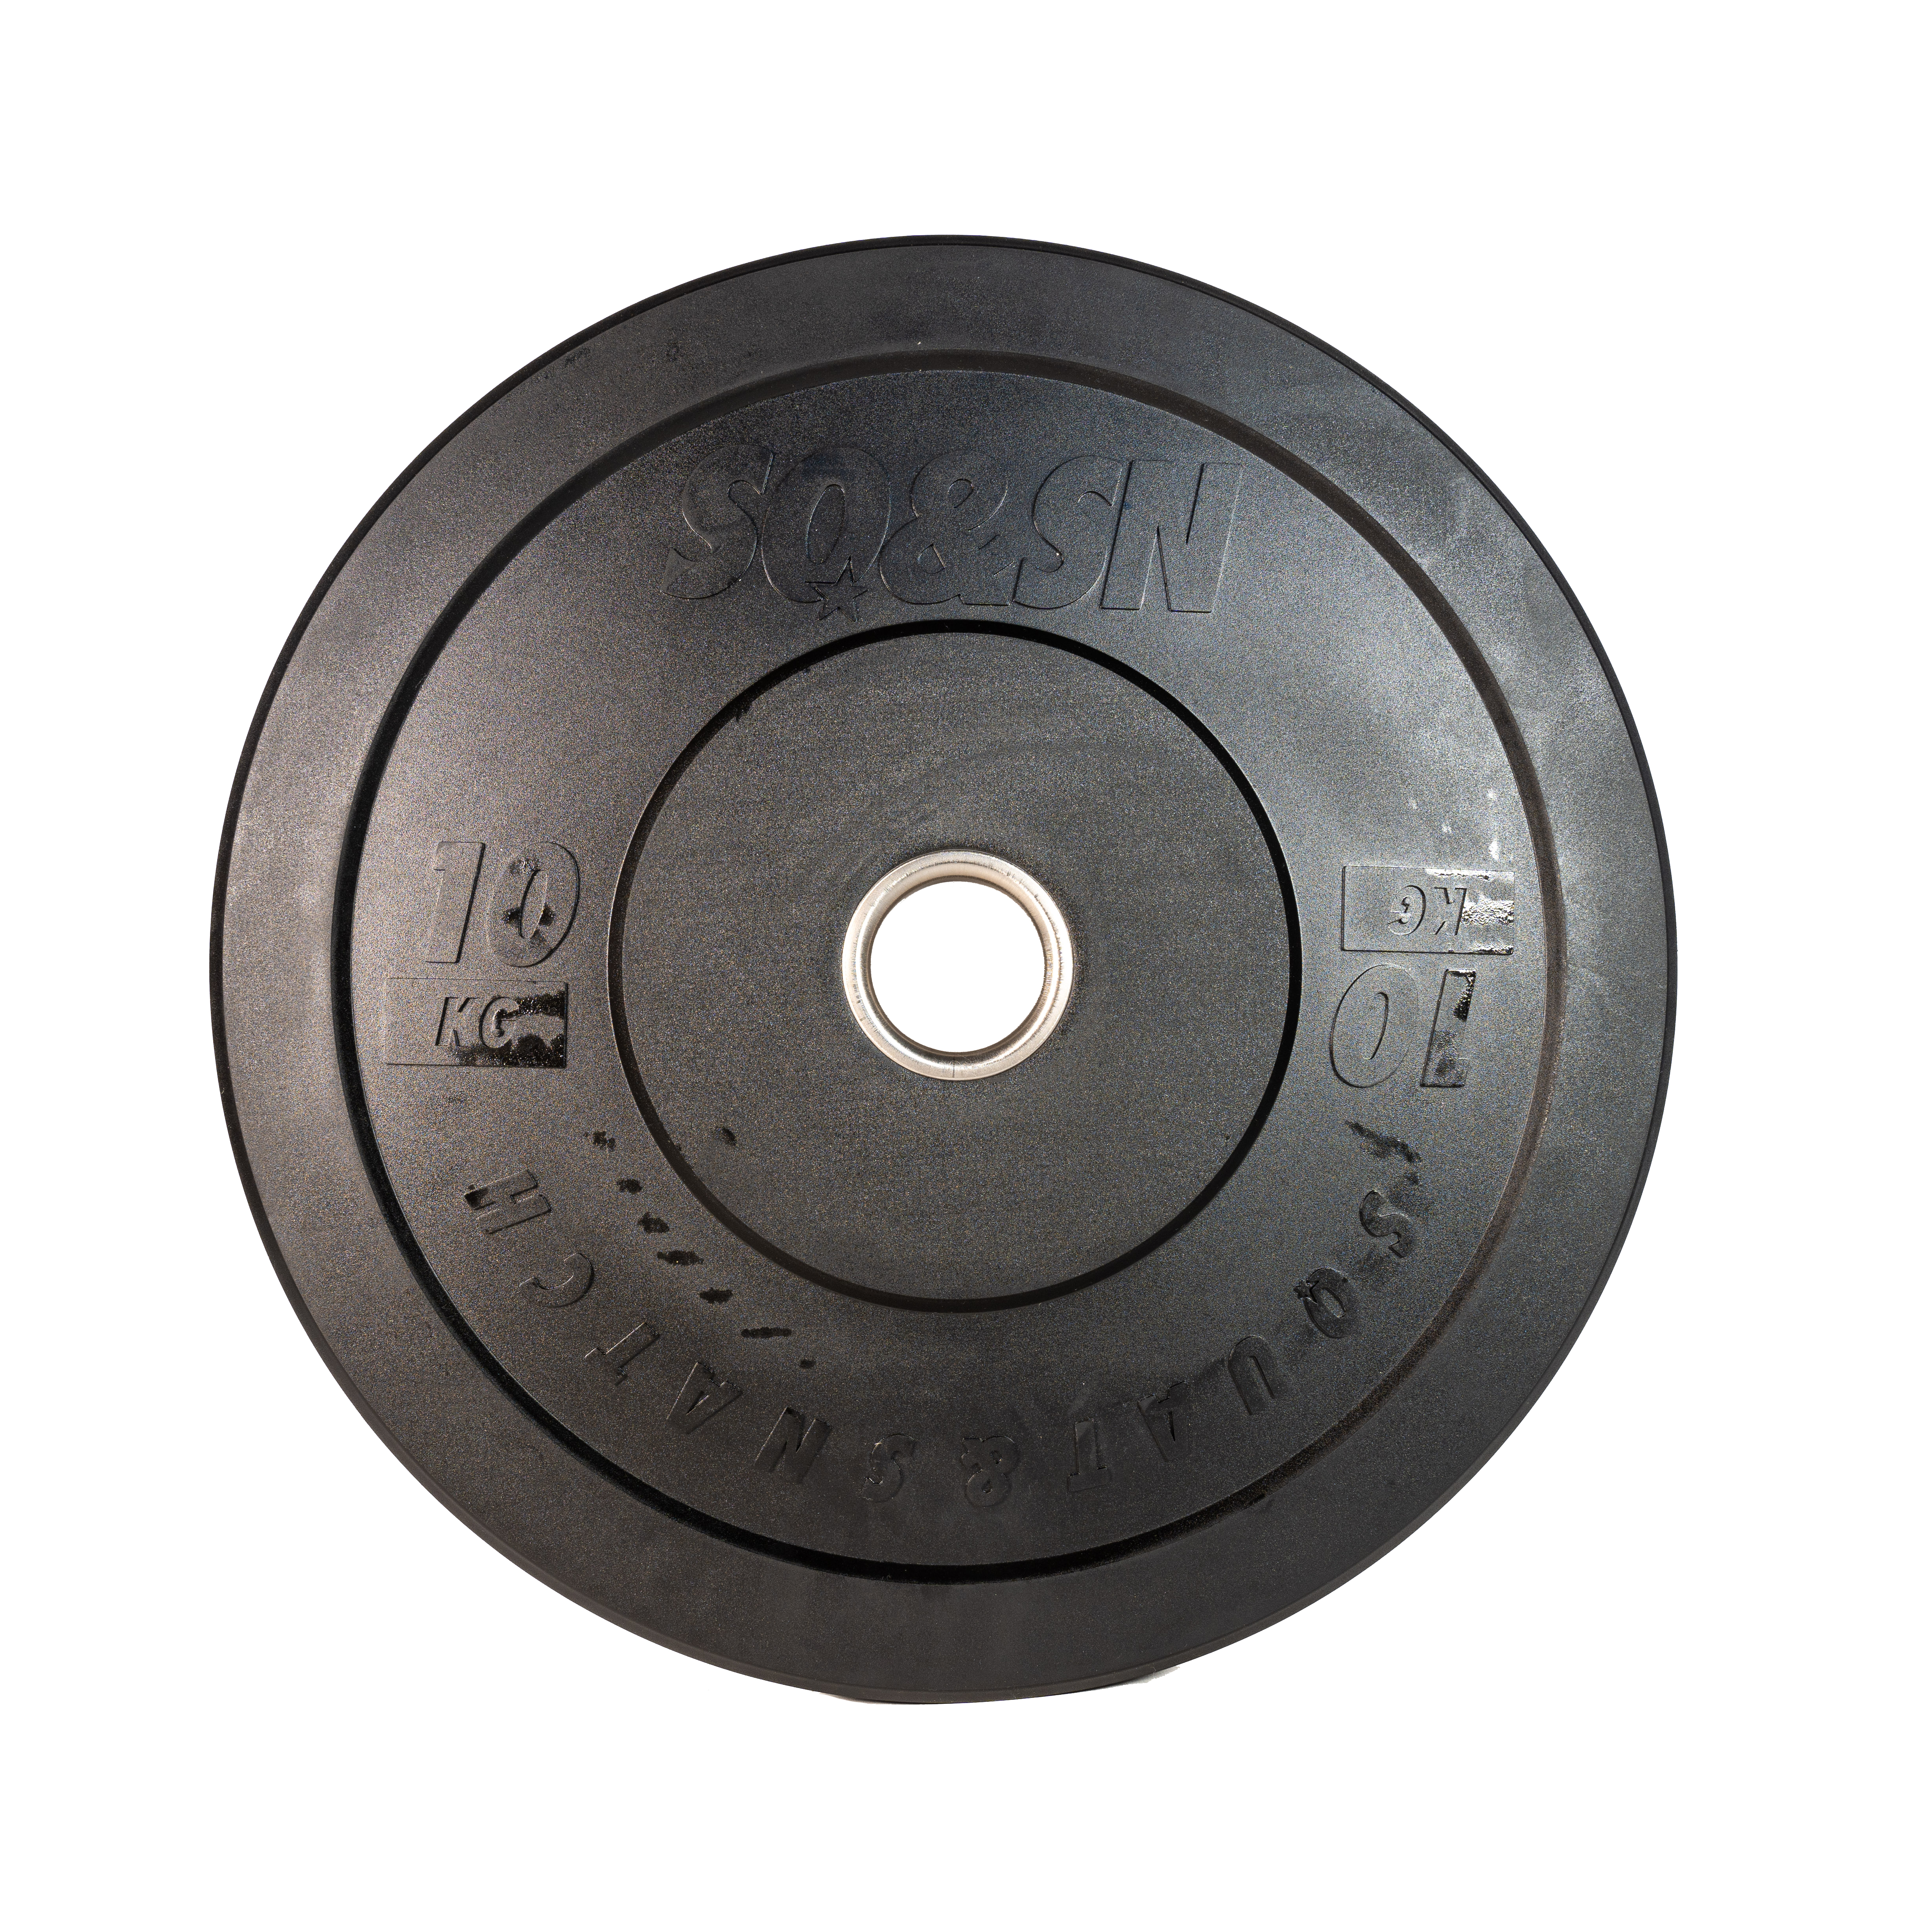 SQ&SN Bumper Plate Vægtskive (10 kg) i sort. Udstyr til styrketræning, vægtløftning og crossfit træning thumbnail